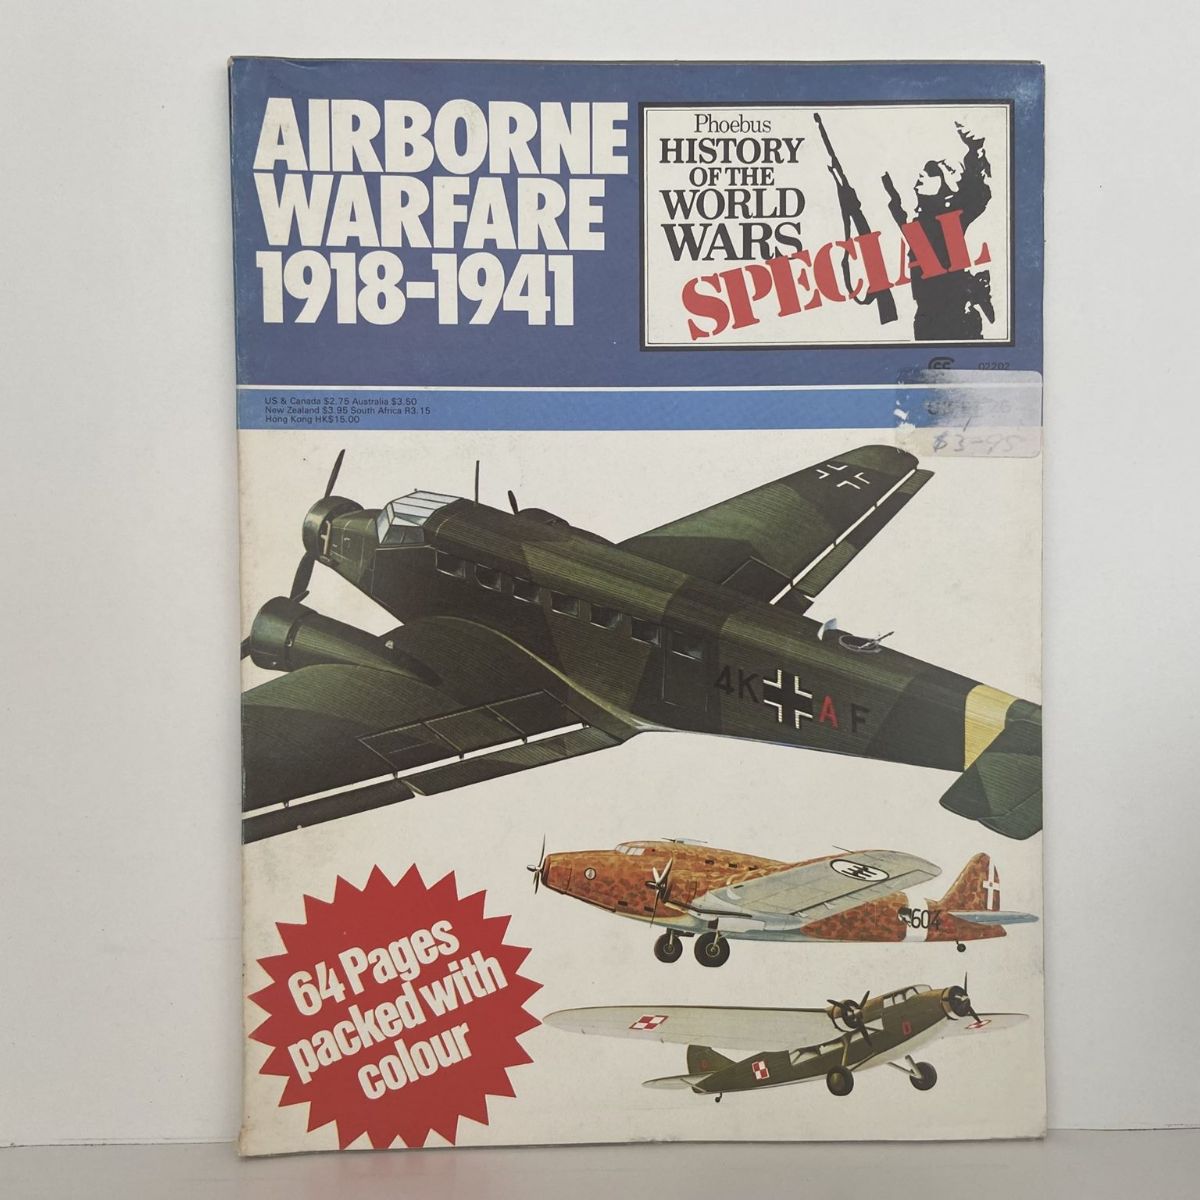 AIRBORNE WARFARE 1918-1941